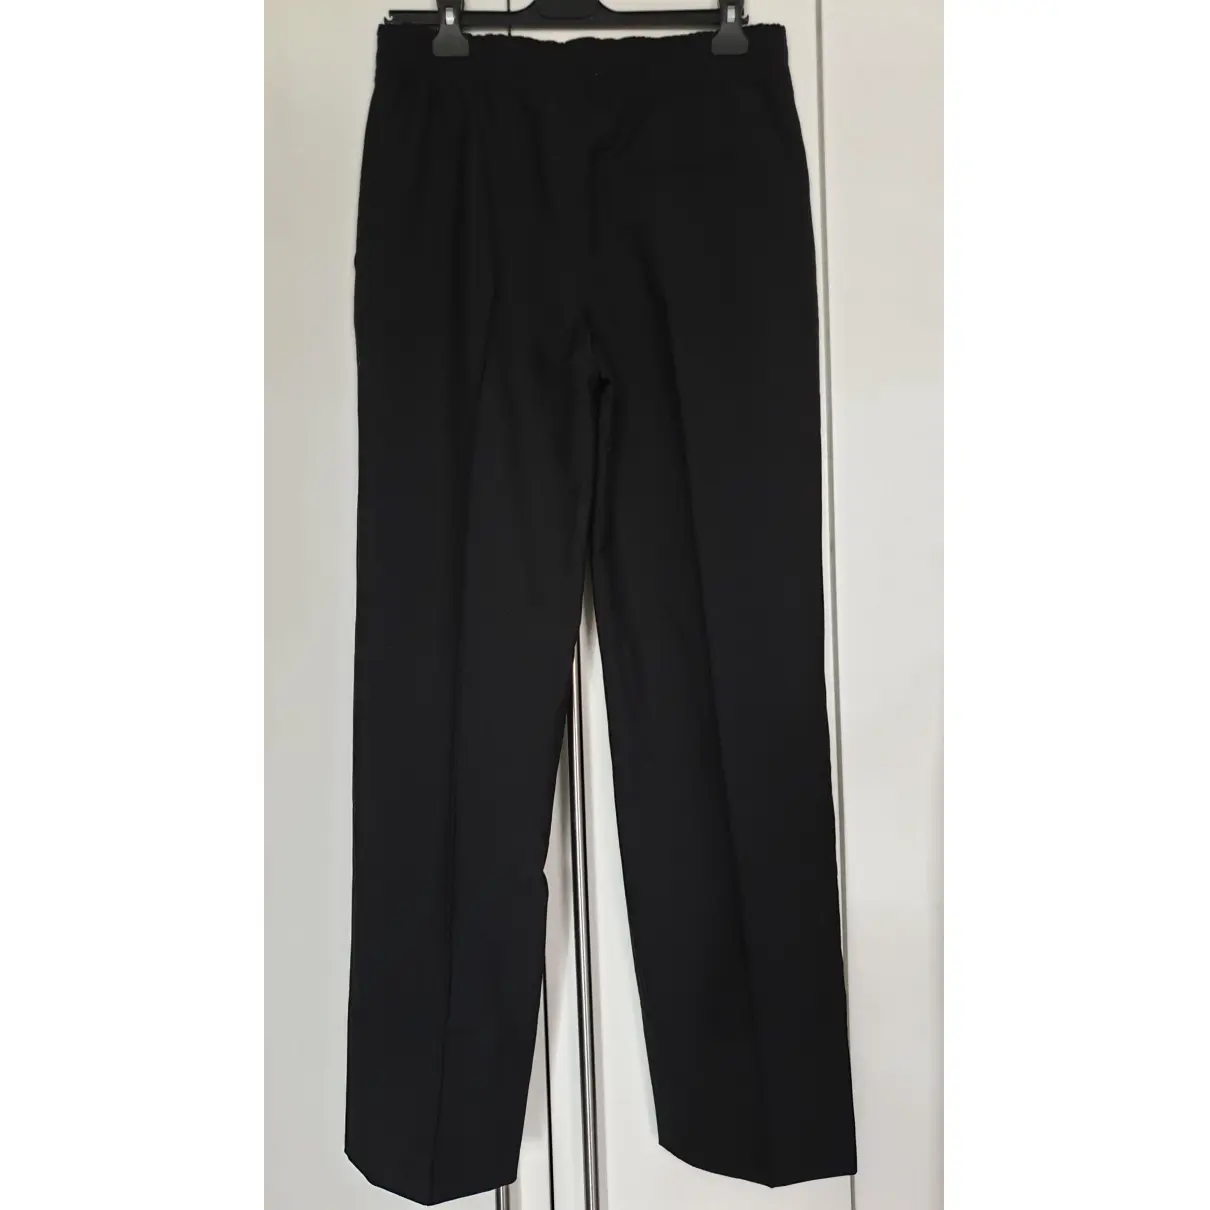 Buy Calvin Klein 205W39NYC Wool trousers online